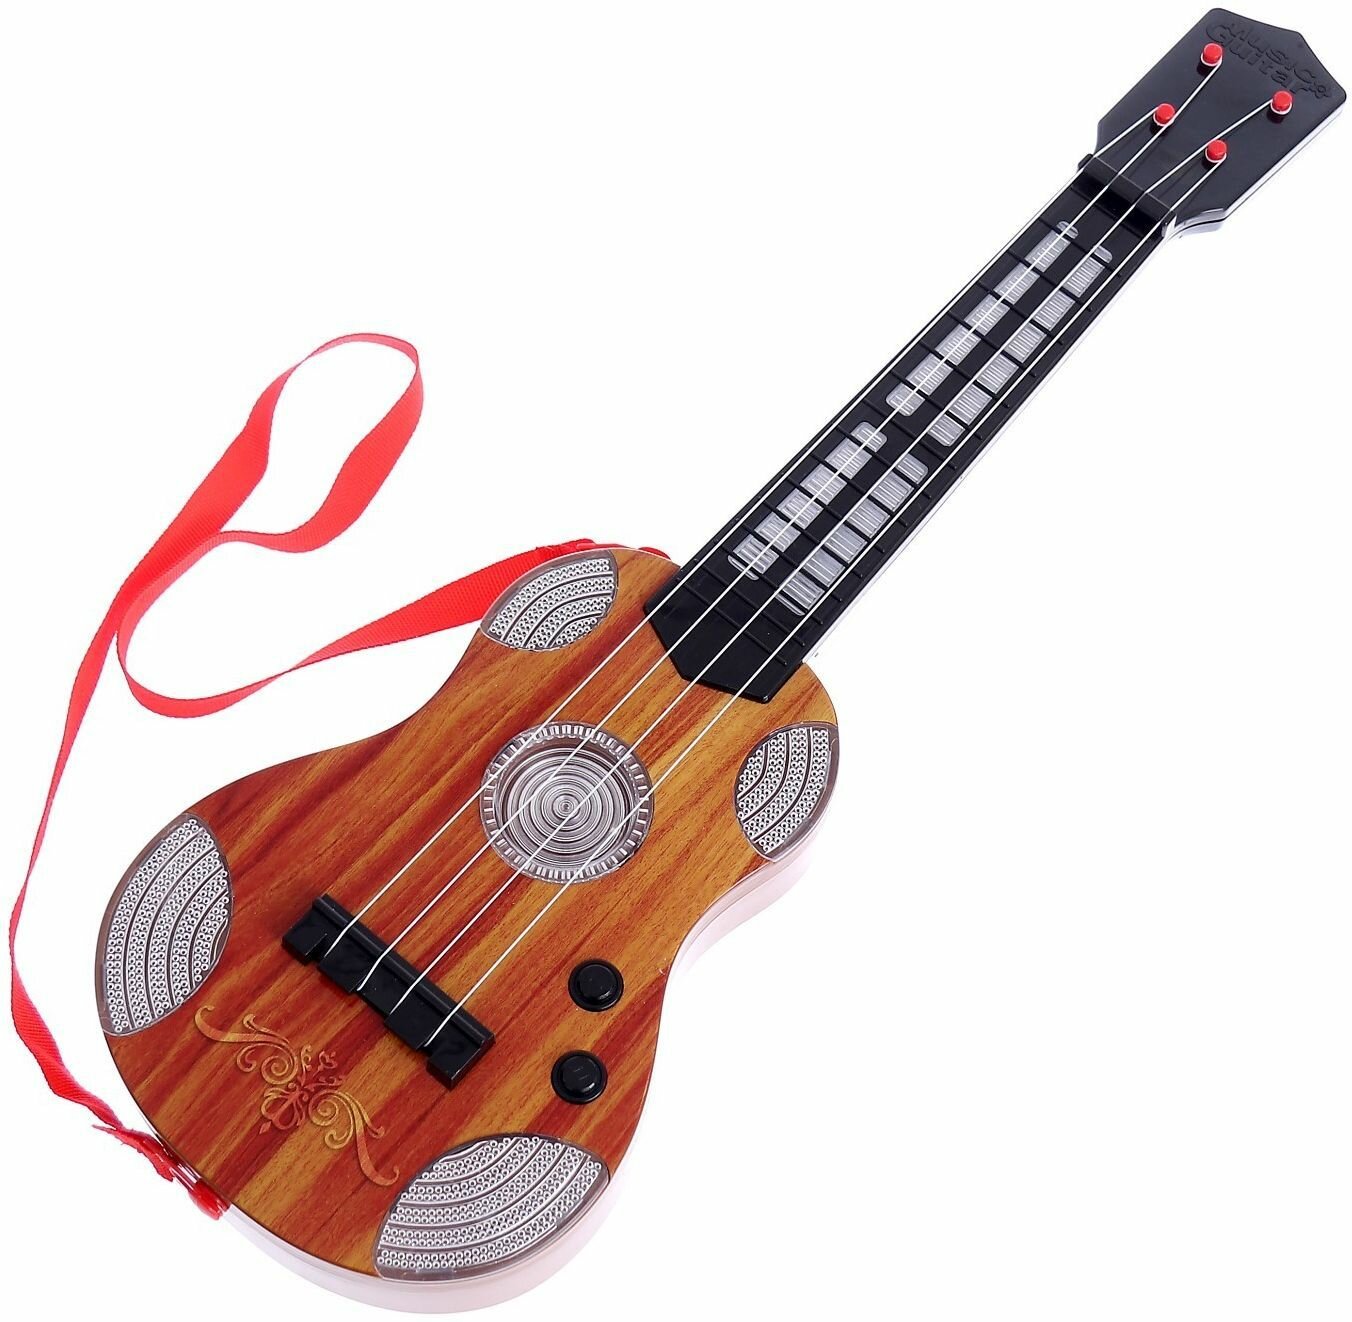 Музыкальная игрушка Гитара "Вечеринка" для детей, со световыми и звуковыми эффектами, 16 мелодий, работает от батареек, струнный инструмент для развития слухового восприятия и чувства ритма